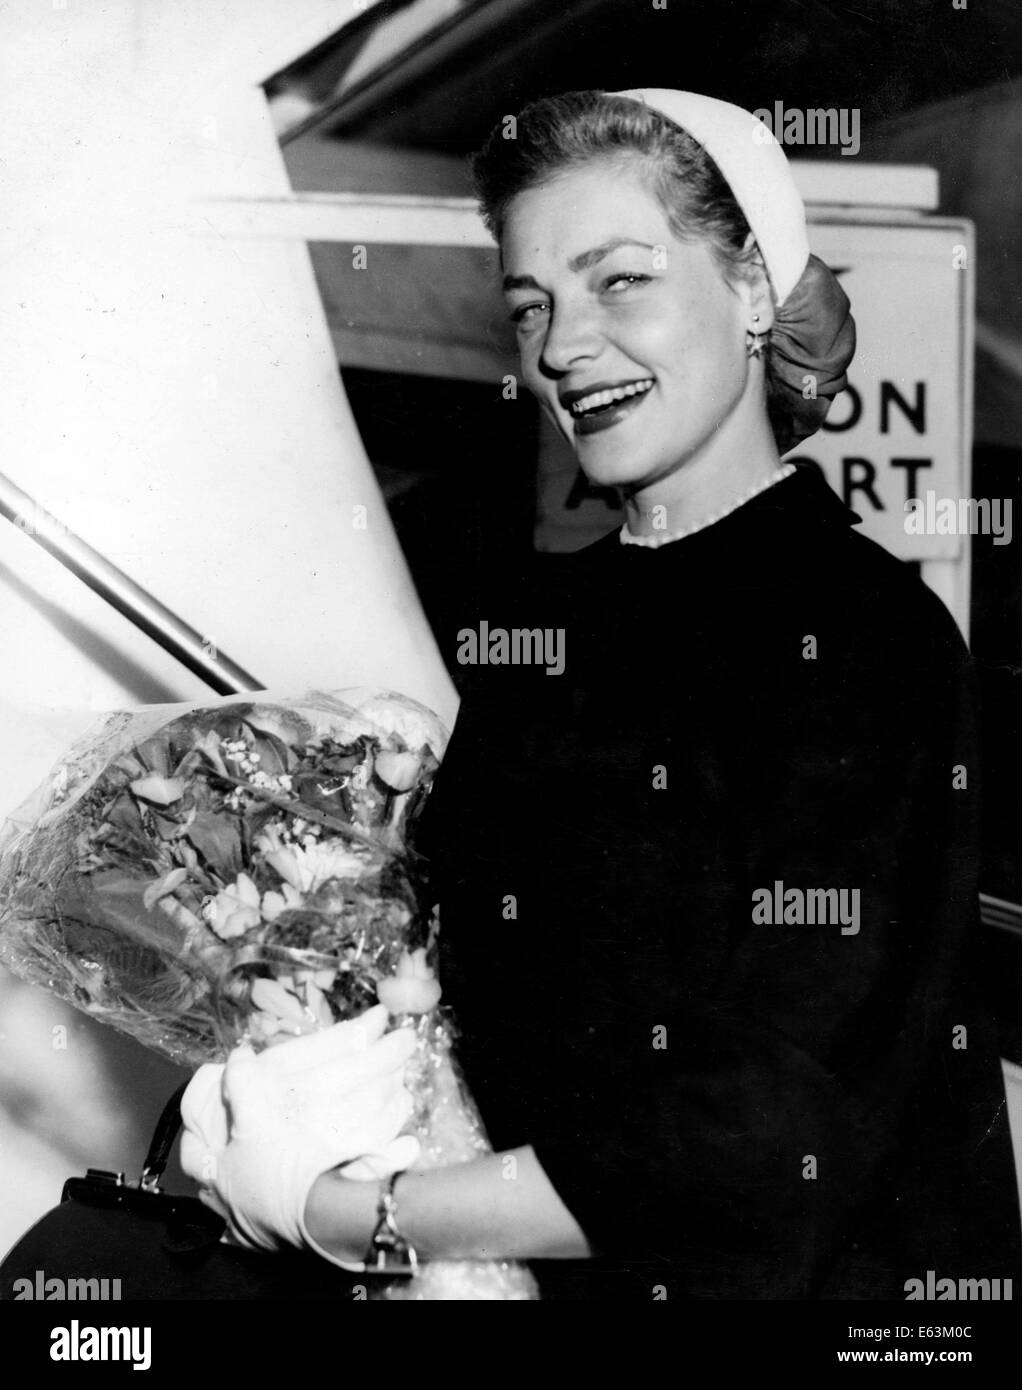 LAUREN BACALL (Sept. 16, 1924 - 12. August 2014) geboren Betty Joan Perske, war eine US-amerikanische Schauspielerin und Model, bekannt für ihre unverwechselbaren rauchigen Stimme und schwül sieht. Sie tauchte erstmals als Hauptdarstellerin in der Humphrey Bogart-Film-Noir-Filme von 1940, sowie komödiantische Rollen in "Wie einen Millionär zu heiraten" (1953) und "Gestaltung Frau" (1957). Bacall habe auch Broadway-Musicals, gewann Tony Awards für "Applaus" im Jahr 1970 und "Woman of the Year" im Jahr 1981. Ihre Leistung in dem Film "The Mirror Has Two Faces" (1996) brachte ihr eine Golden Globe Award und eine Oscar-Nominierung. Stockfoto